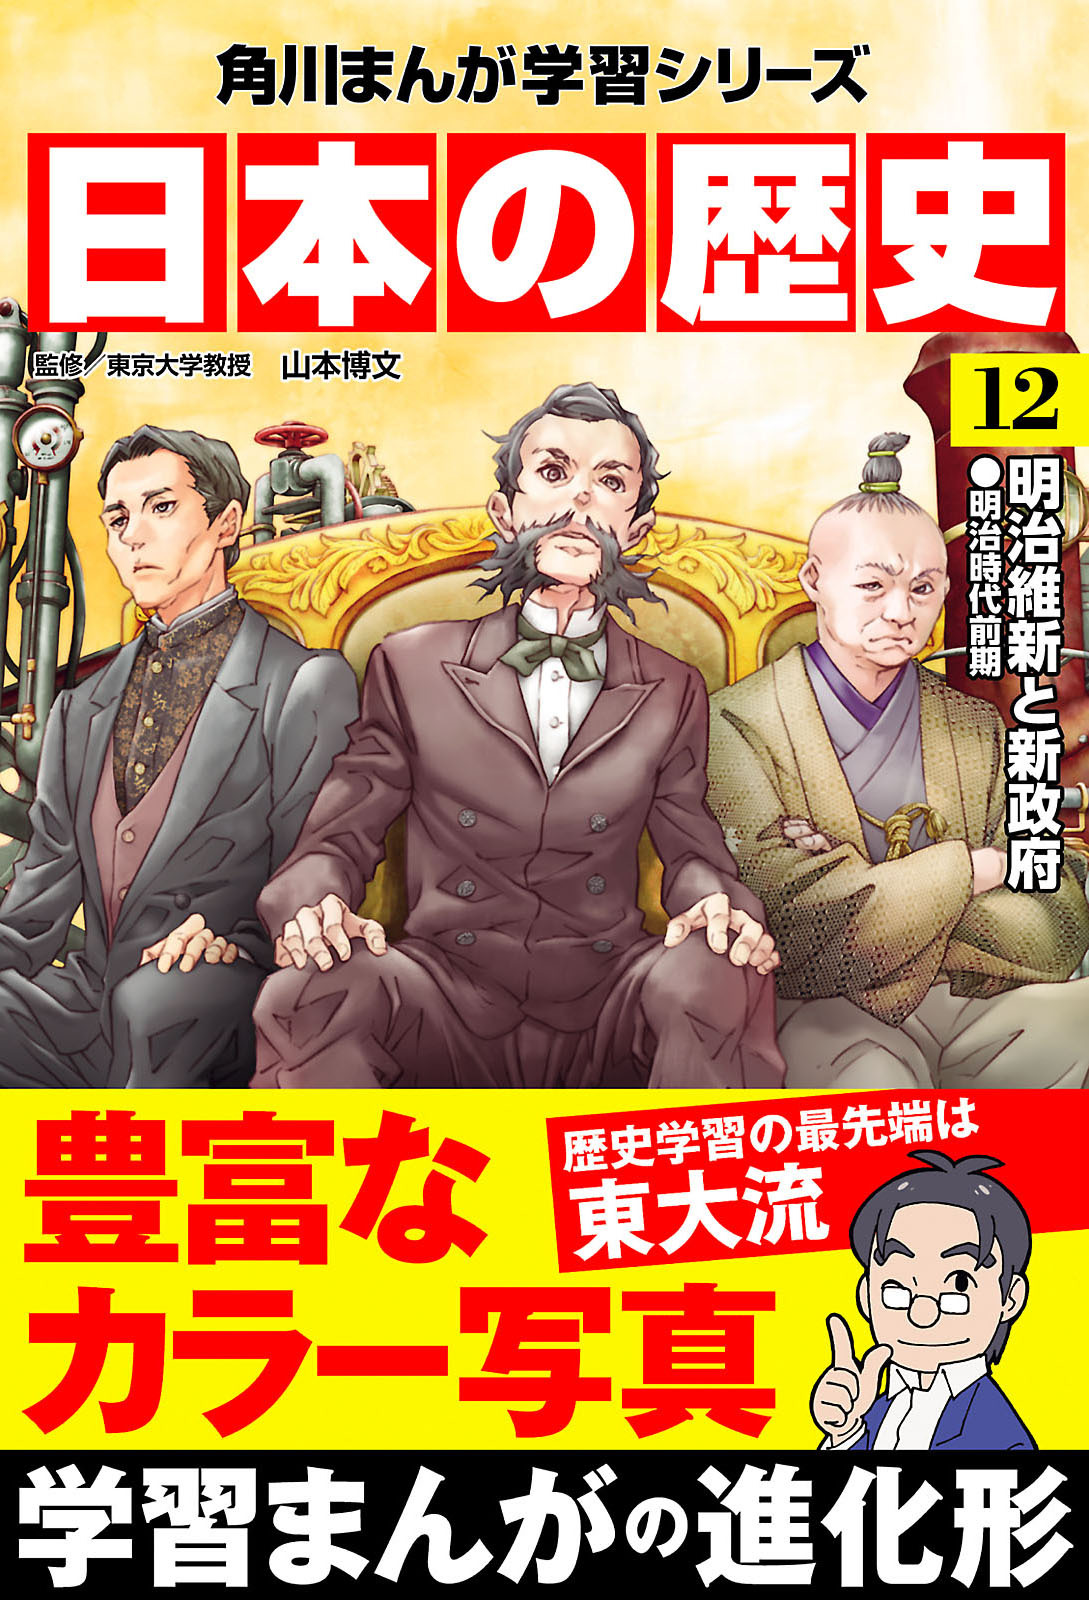 日本の歴史 12 明治維新と新政府 明治時代前期 無料 試し読みなら Amebaマンガ 旧 読書のお時間です